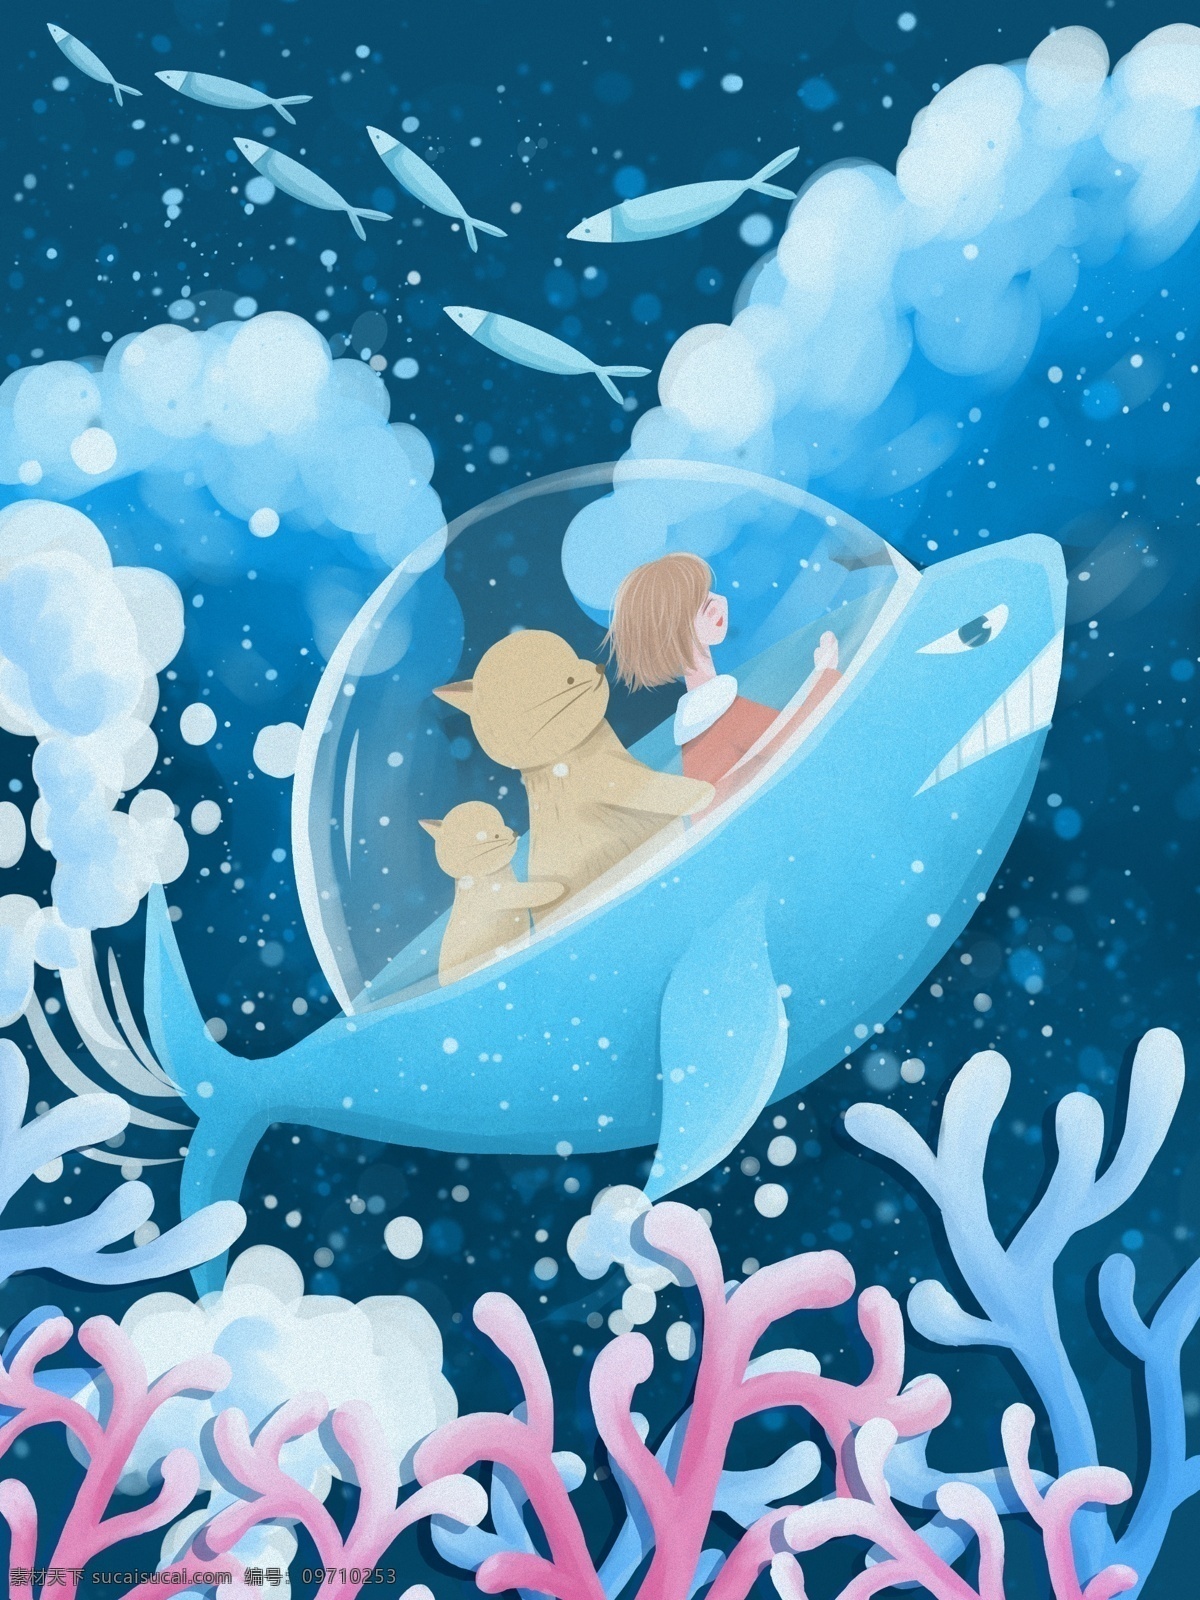 海洋 探险 肌理 写实 插画 蓝色 清新 可爱 壁纸 海洋探险 海底 鱼 潜水艇 鲸鱼 鲸 海水 珊瑚 小鱼 鱼群 女孩 猫 治愈